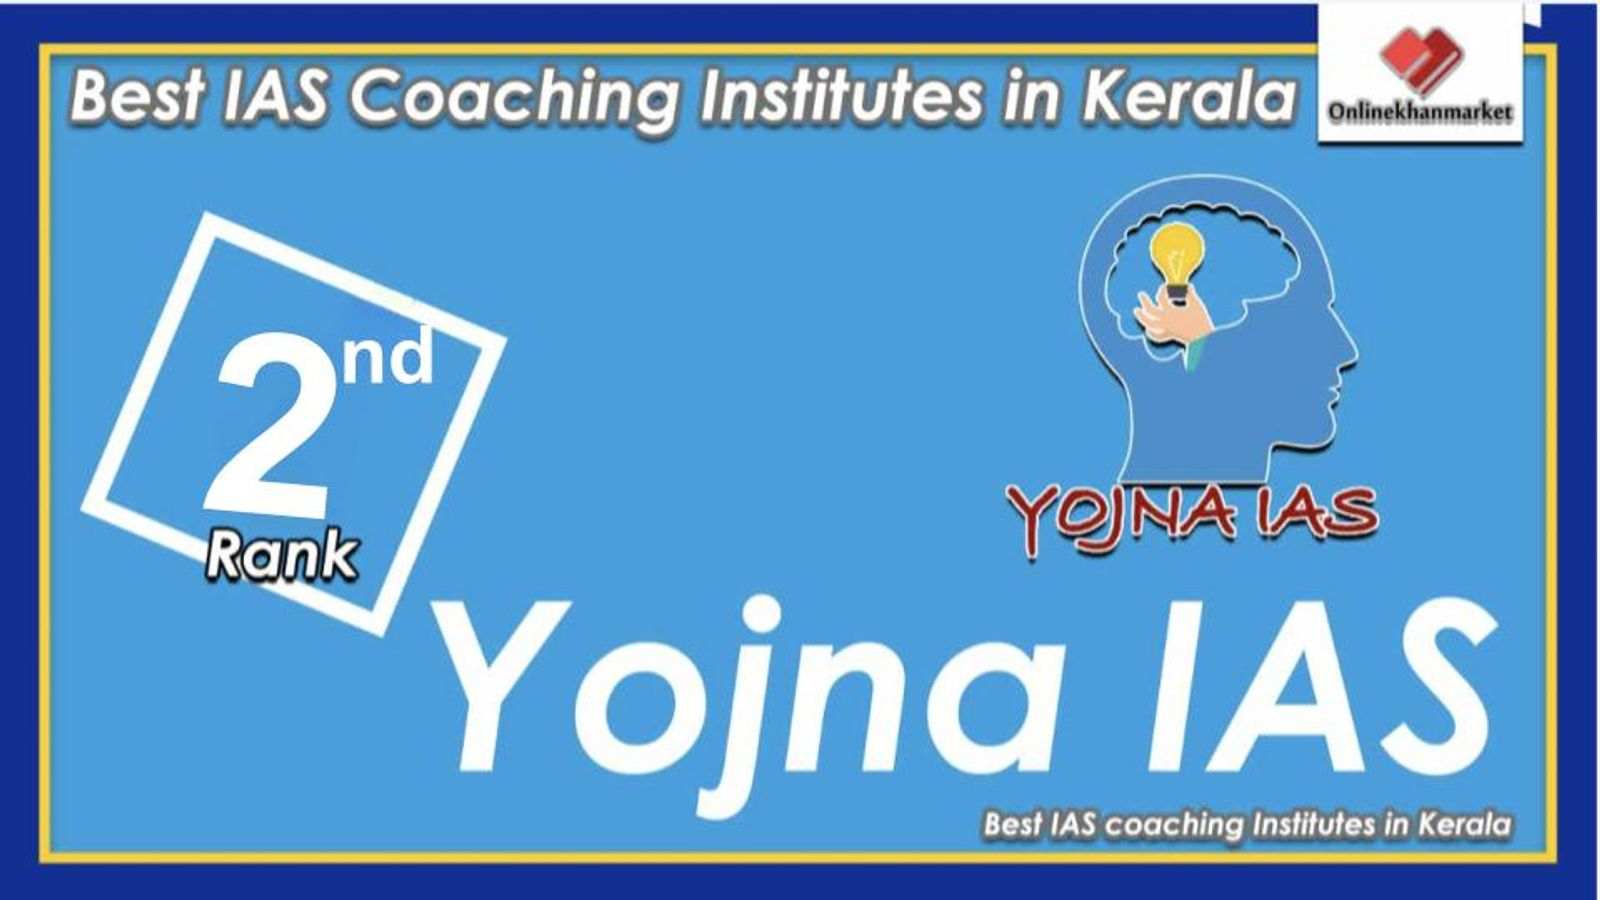 IAS Coaching in Kerala